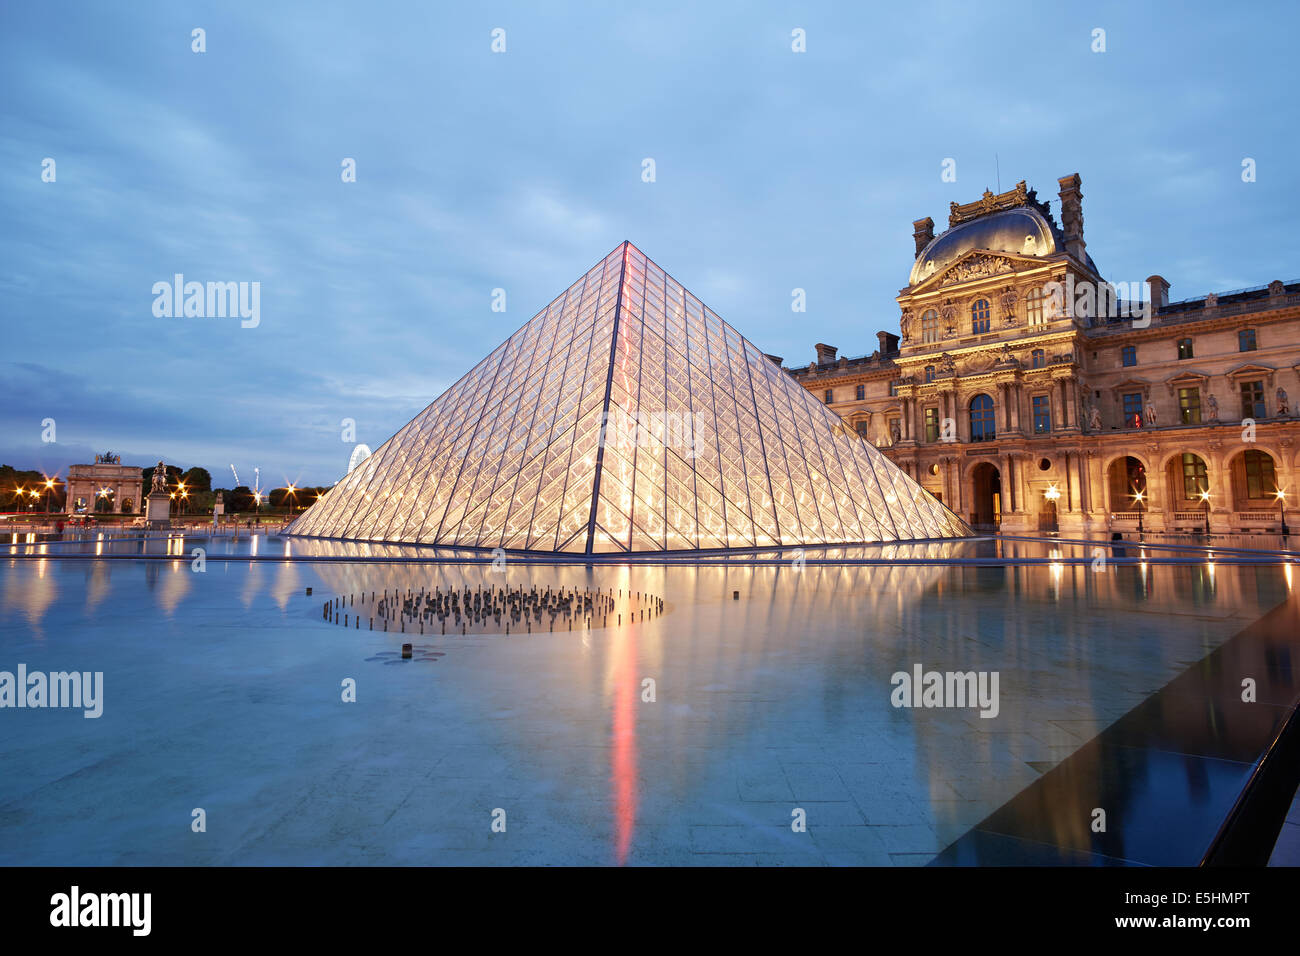 Pyramide du Louvre et Vue de nuit à Paris, France Banque D'Images